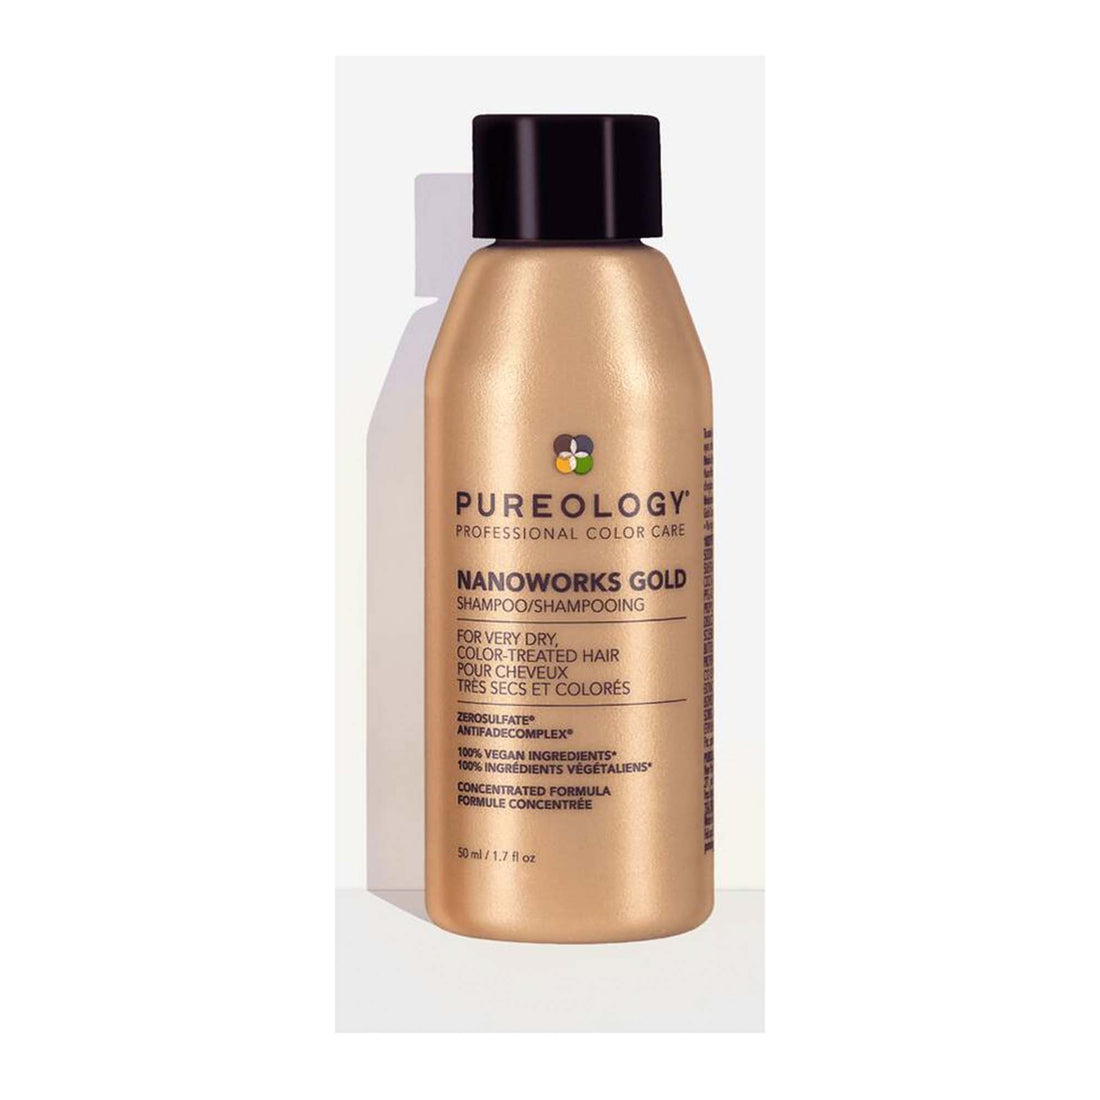 Pureology Nanoworks Gold Shampoo 1.7oz